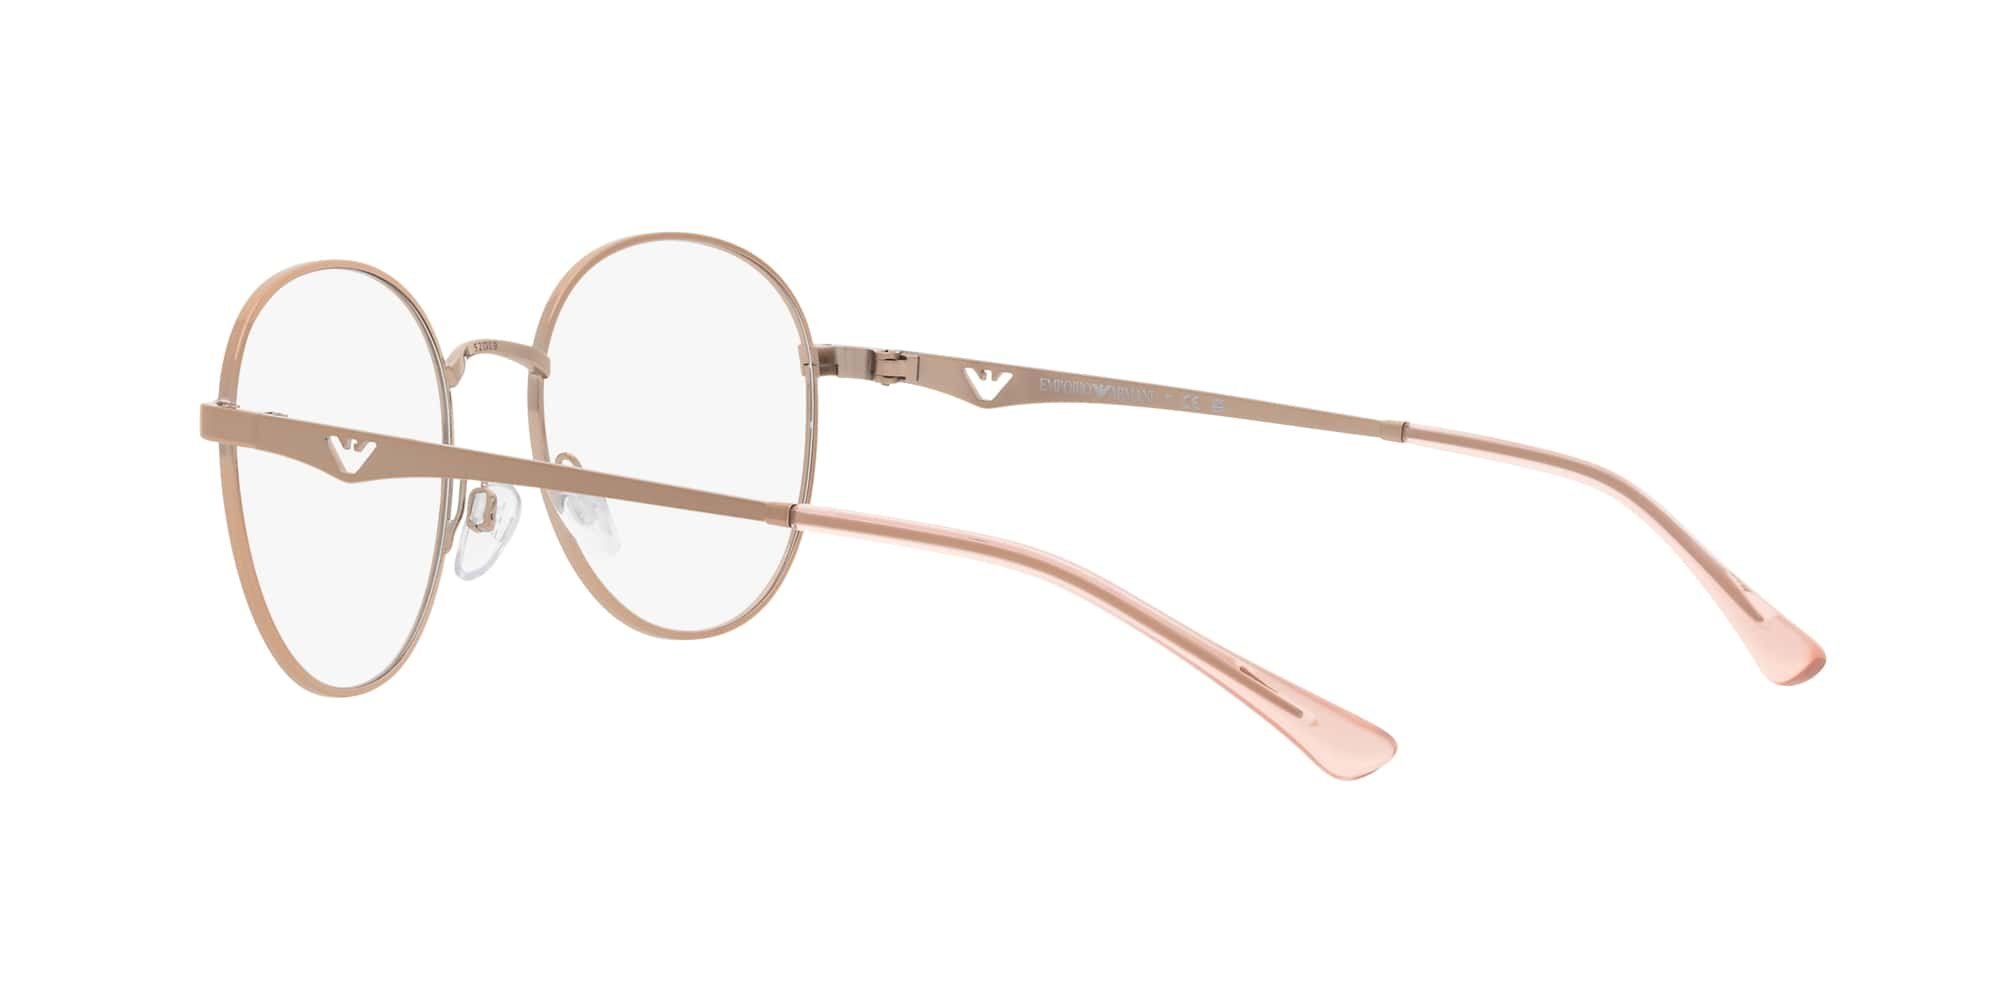 Das Bild zeigt die Korrektionsbrille EA1144 3011 von der Marke Emporio Armani in Rosegold.